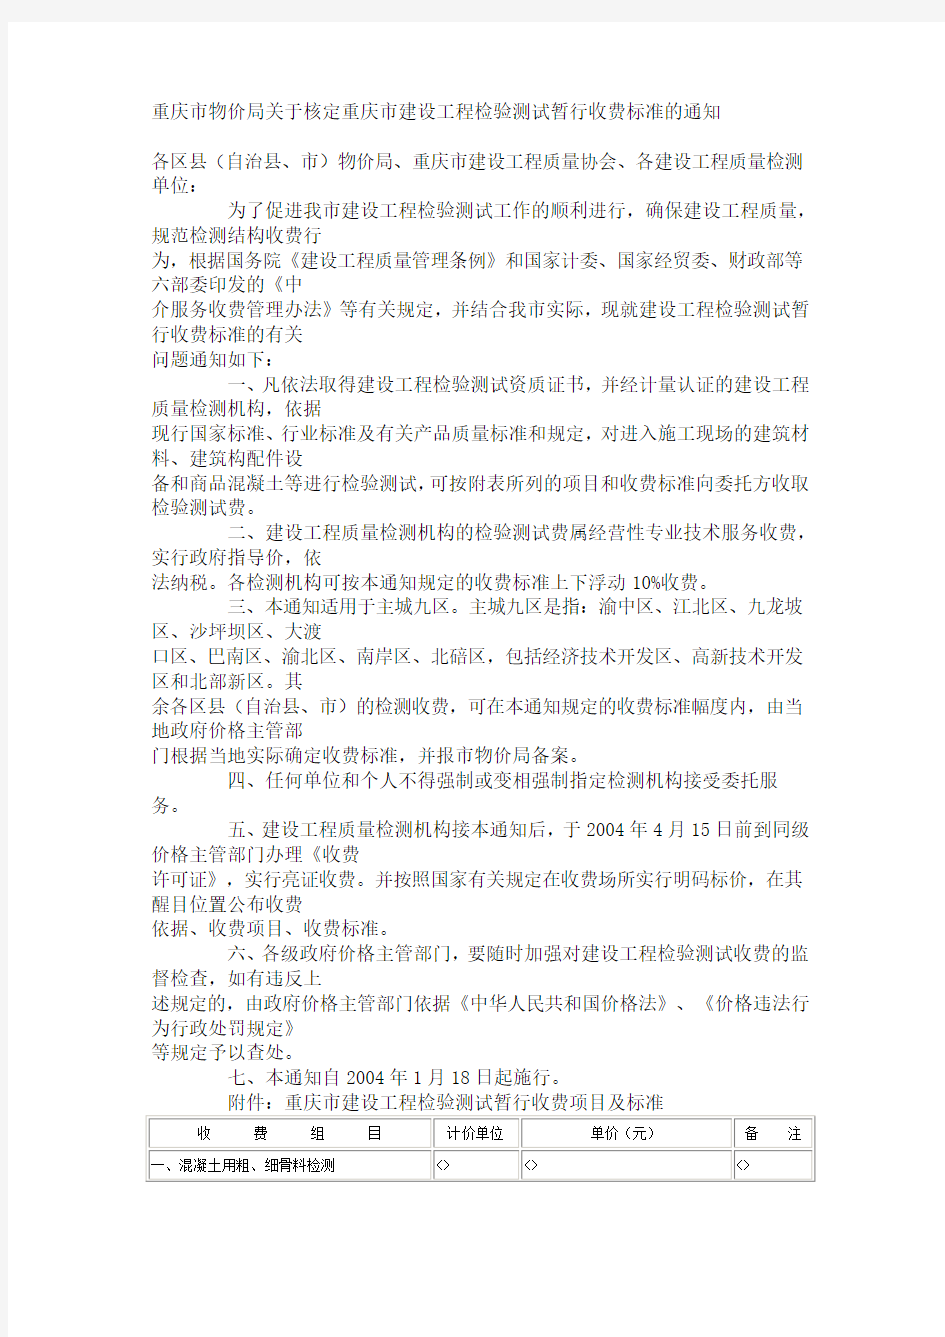 重庆市物价局关于核定重庆市建设工程检验测试暂行收费标准的通知